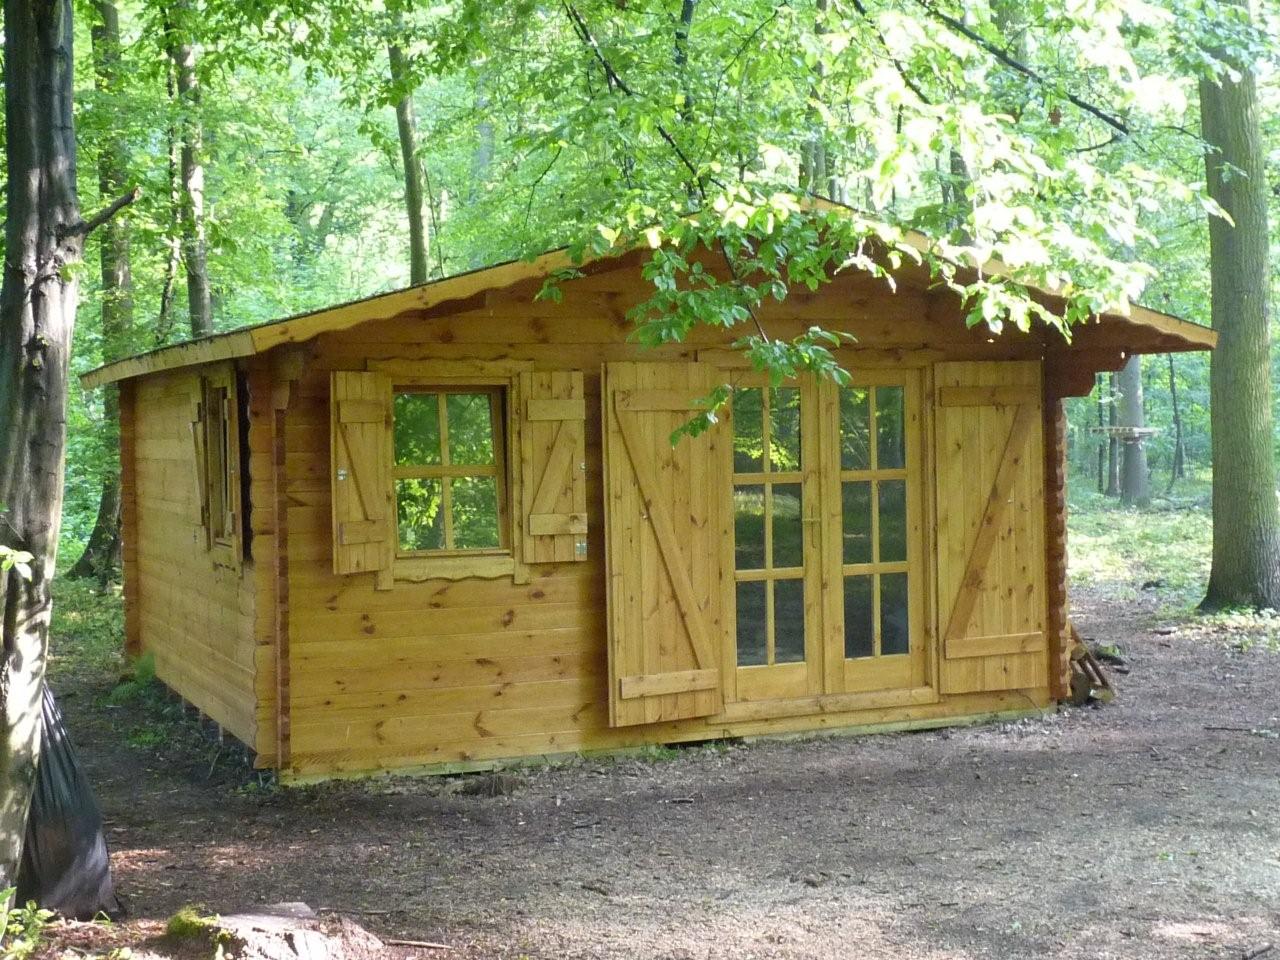 Quel prix d'une cabane en bois habitable ? - Les Coconcepteurs